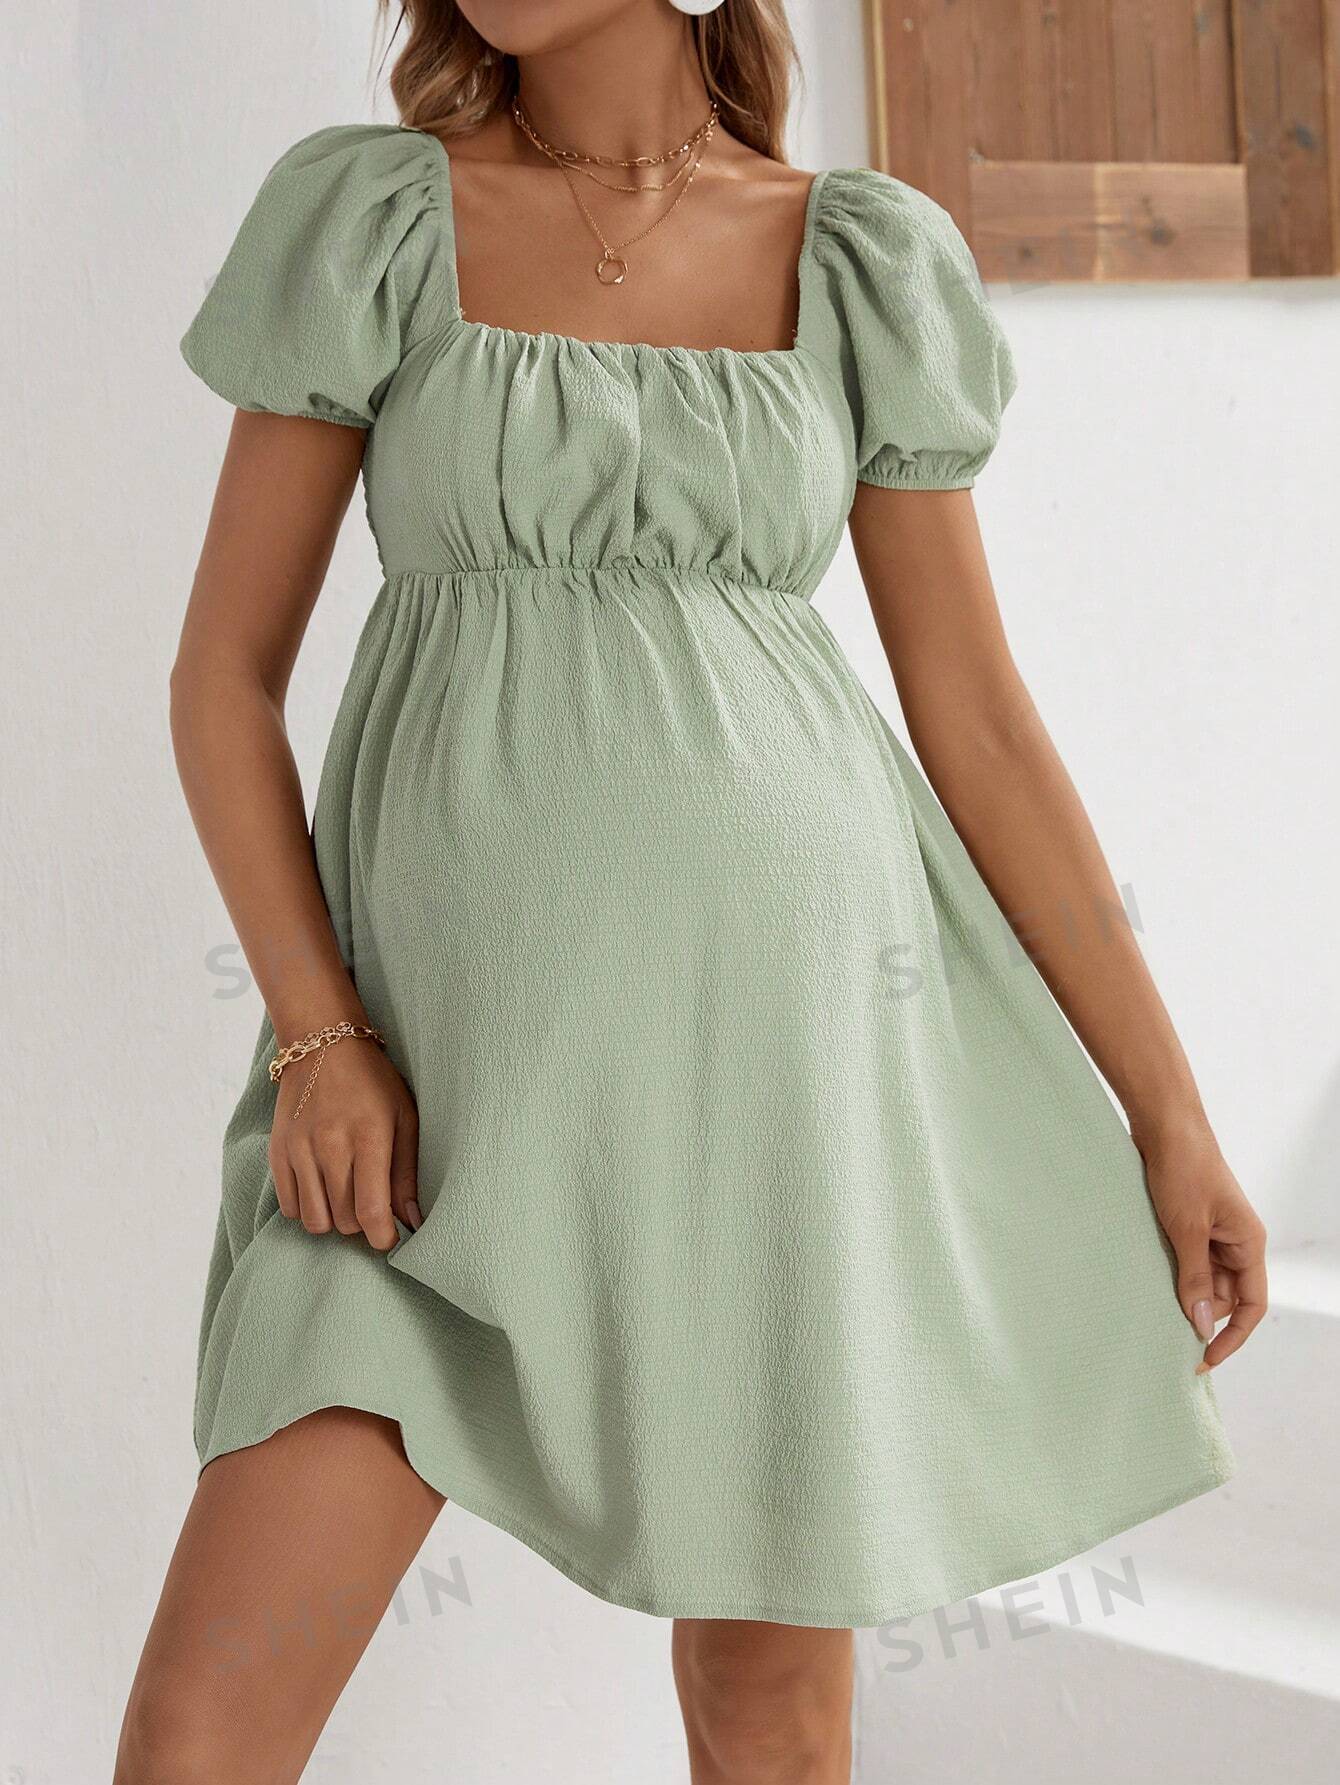 SHEIN Элегантное облегающее платье с квадратным вырезом и короткими рукавами для беременных для работы, зеленый женское жаккардовое платье без рукавов элегантное праздничное белое облегающее платье с квадратным вырезом бантом на бретелях и высокой